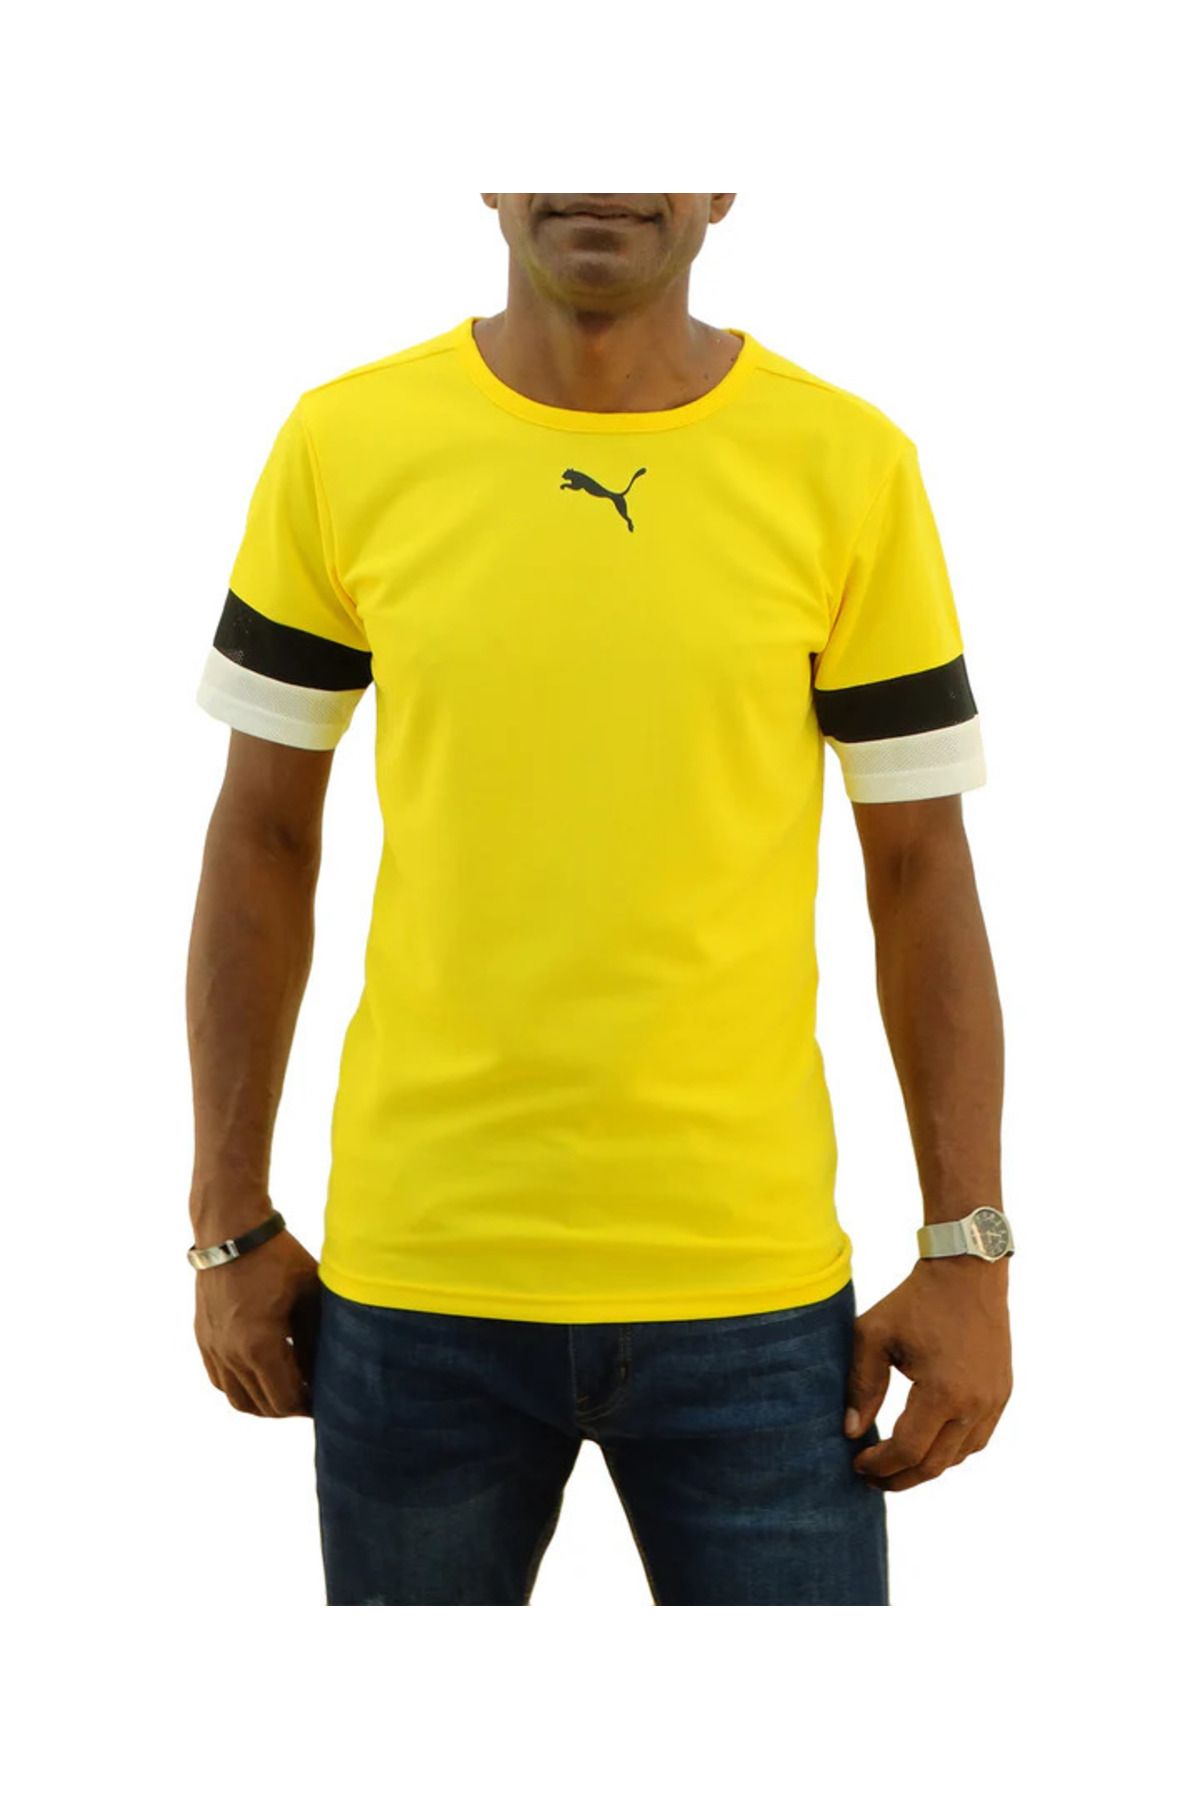 Puma Teamrise Jersey Erkek Tişört Günlük Kullanıma ve Antrenmana Uygun T-shirt